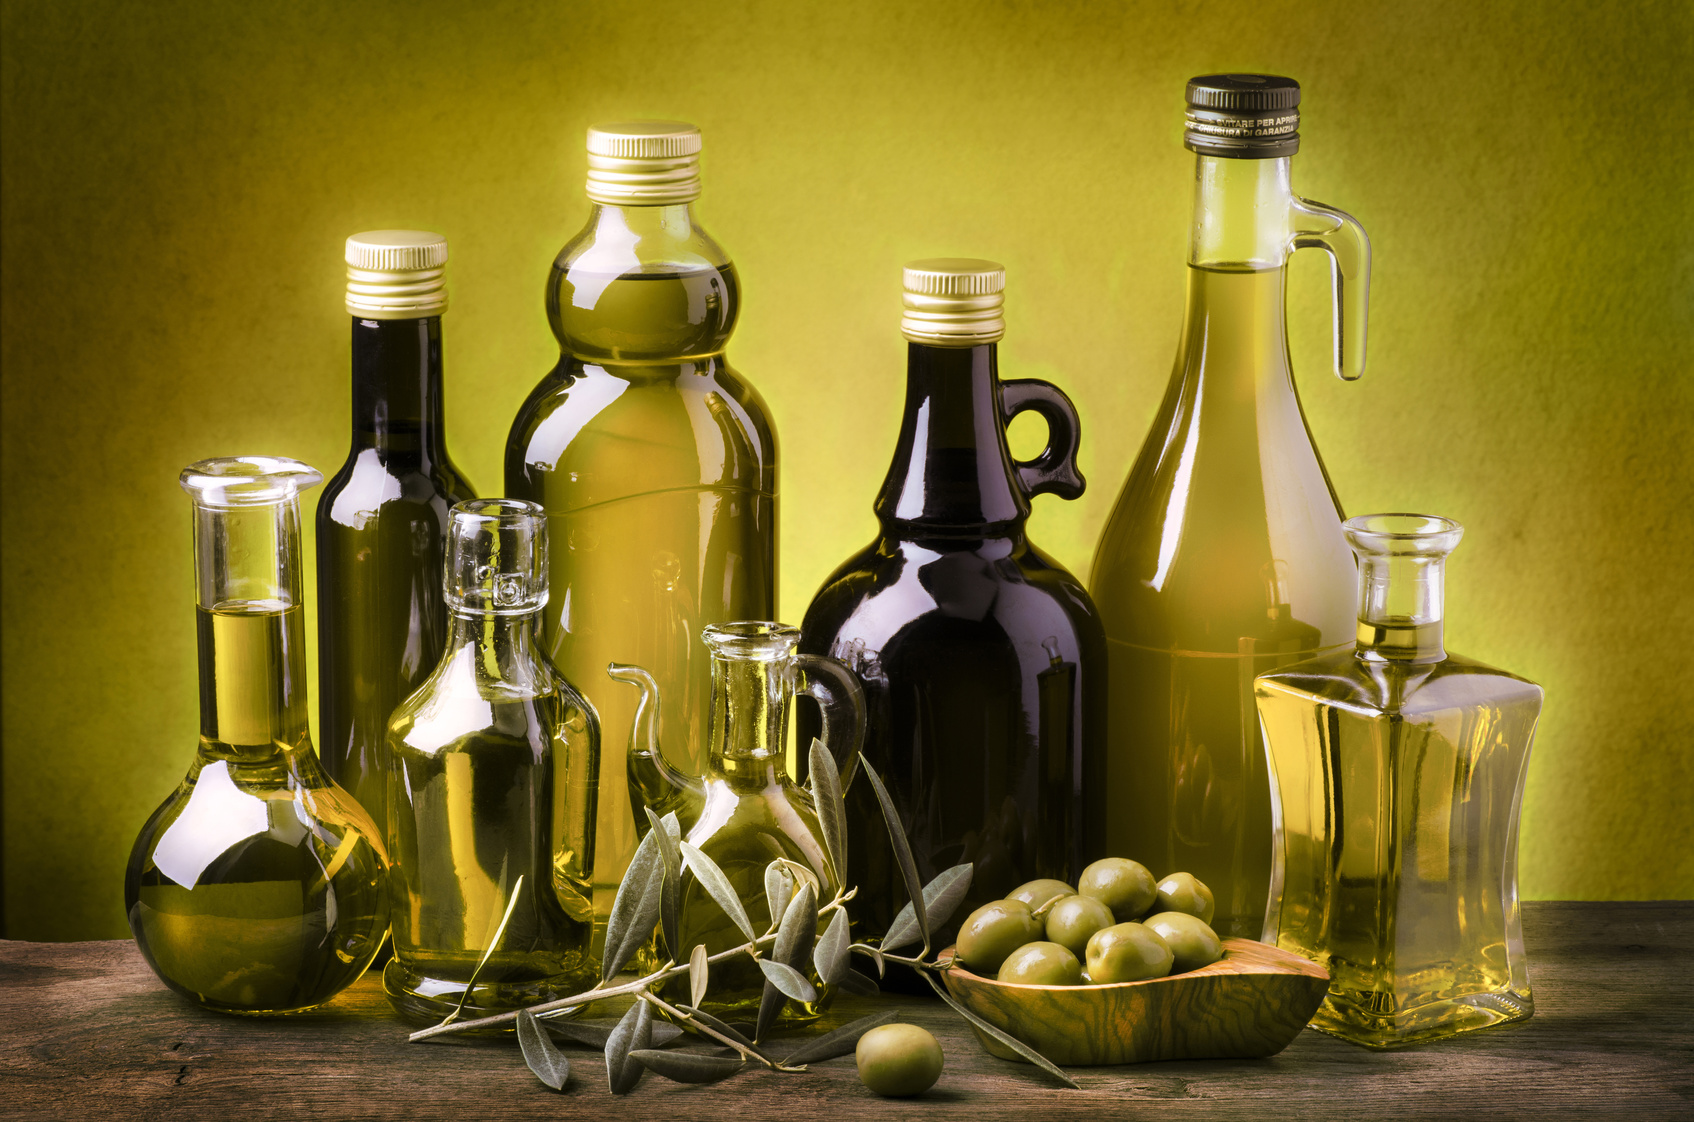 Olio extravergine d'oliva: pochi italiani conoscono la qualità